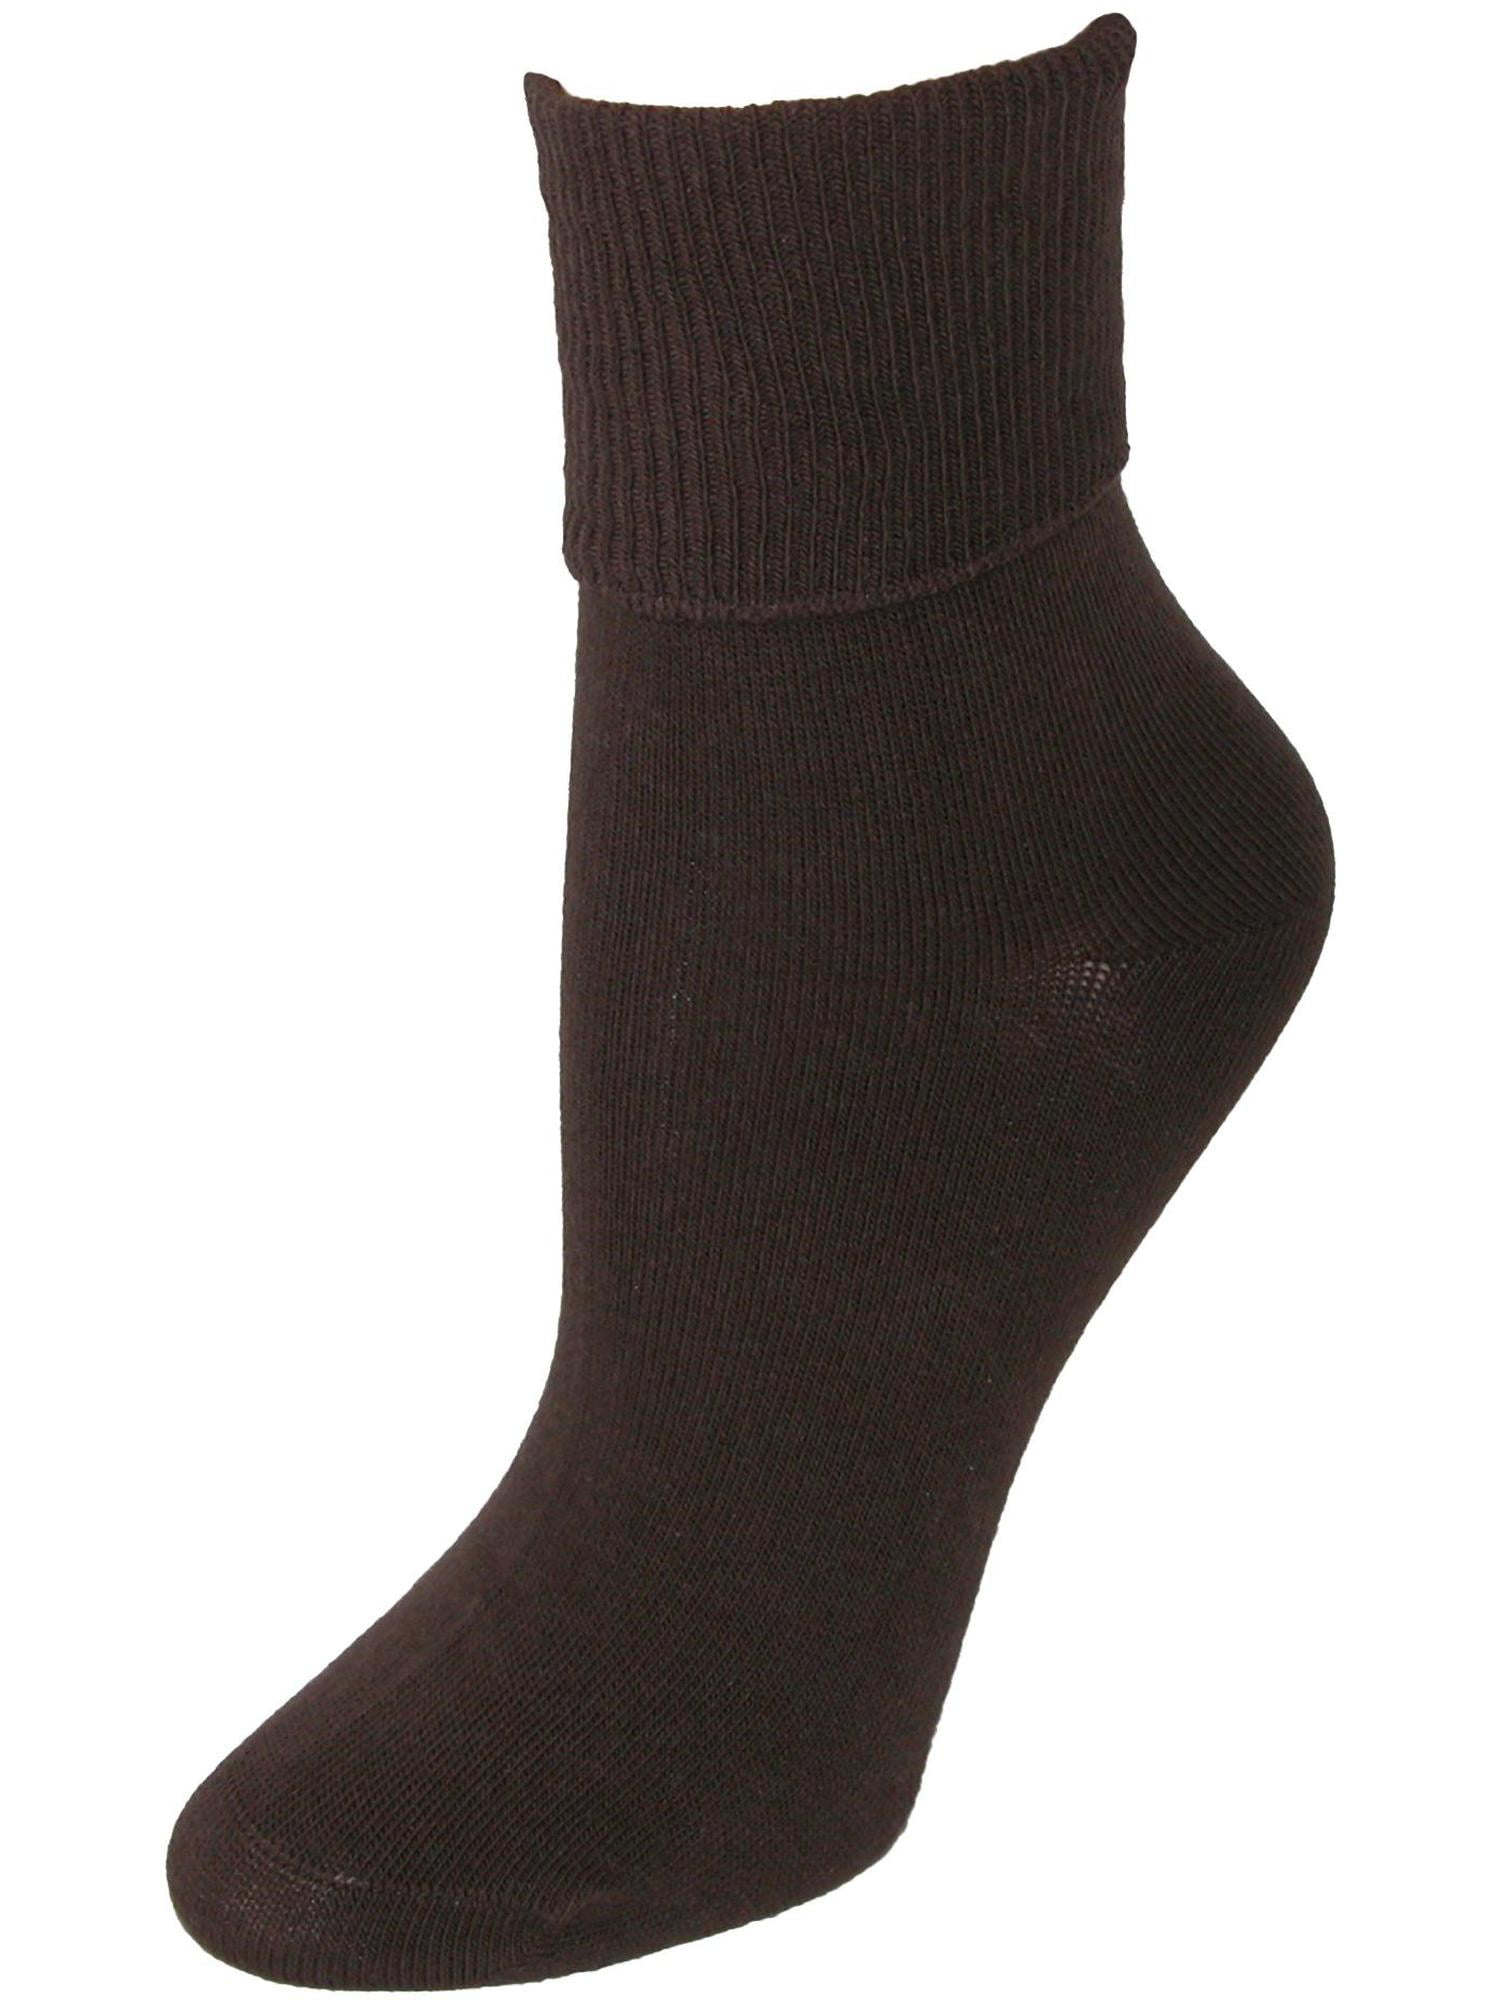 Jefferies Socks Organic Cotton Turn Cuff Socks (Women)